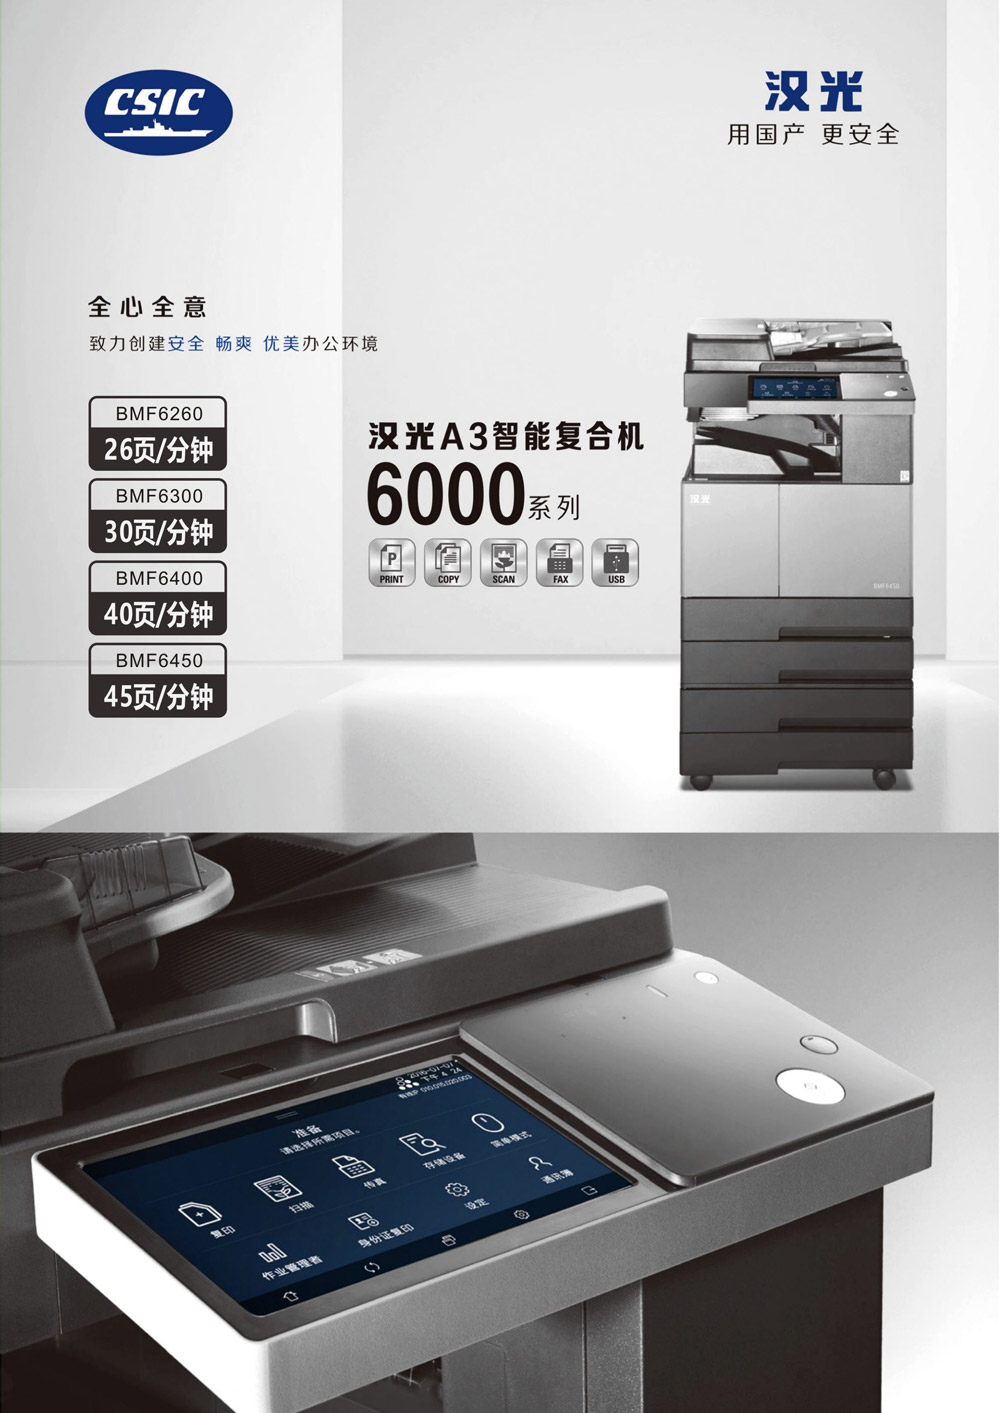 汉光 BMF6400 黑白复印机 （标配双面器+自动输稿器+双纸盒+工作台）